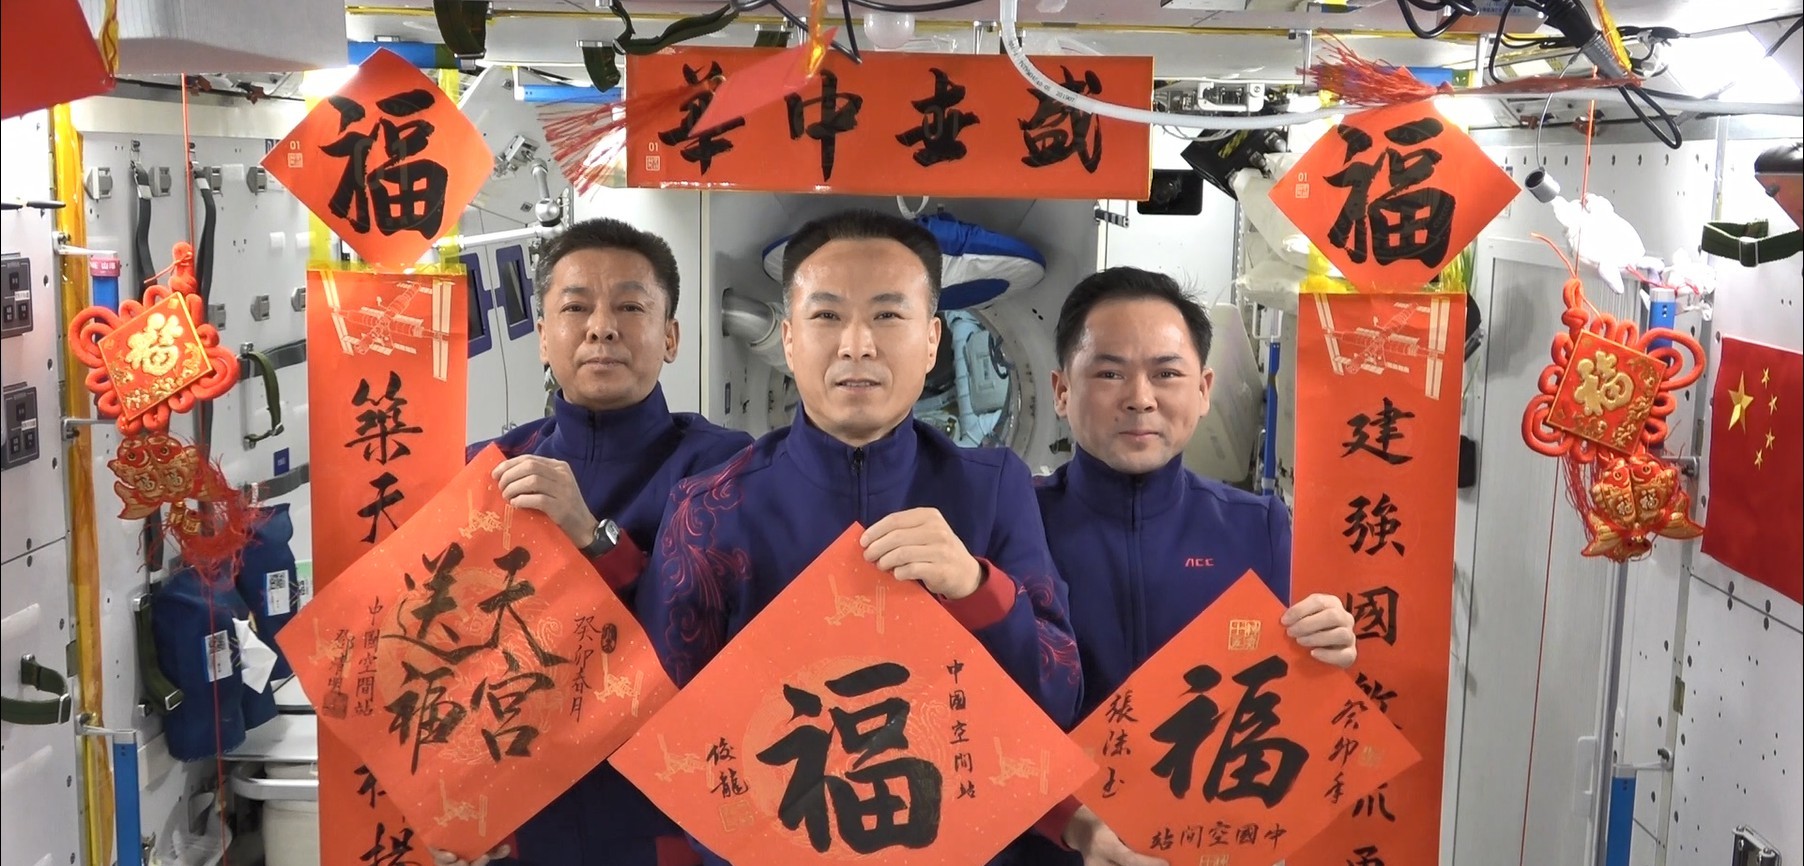 中国空间站迎来建成后首个春节神舟十五号航天员祝祖国国泰民安